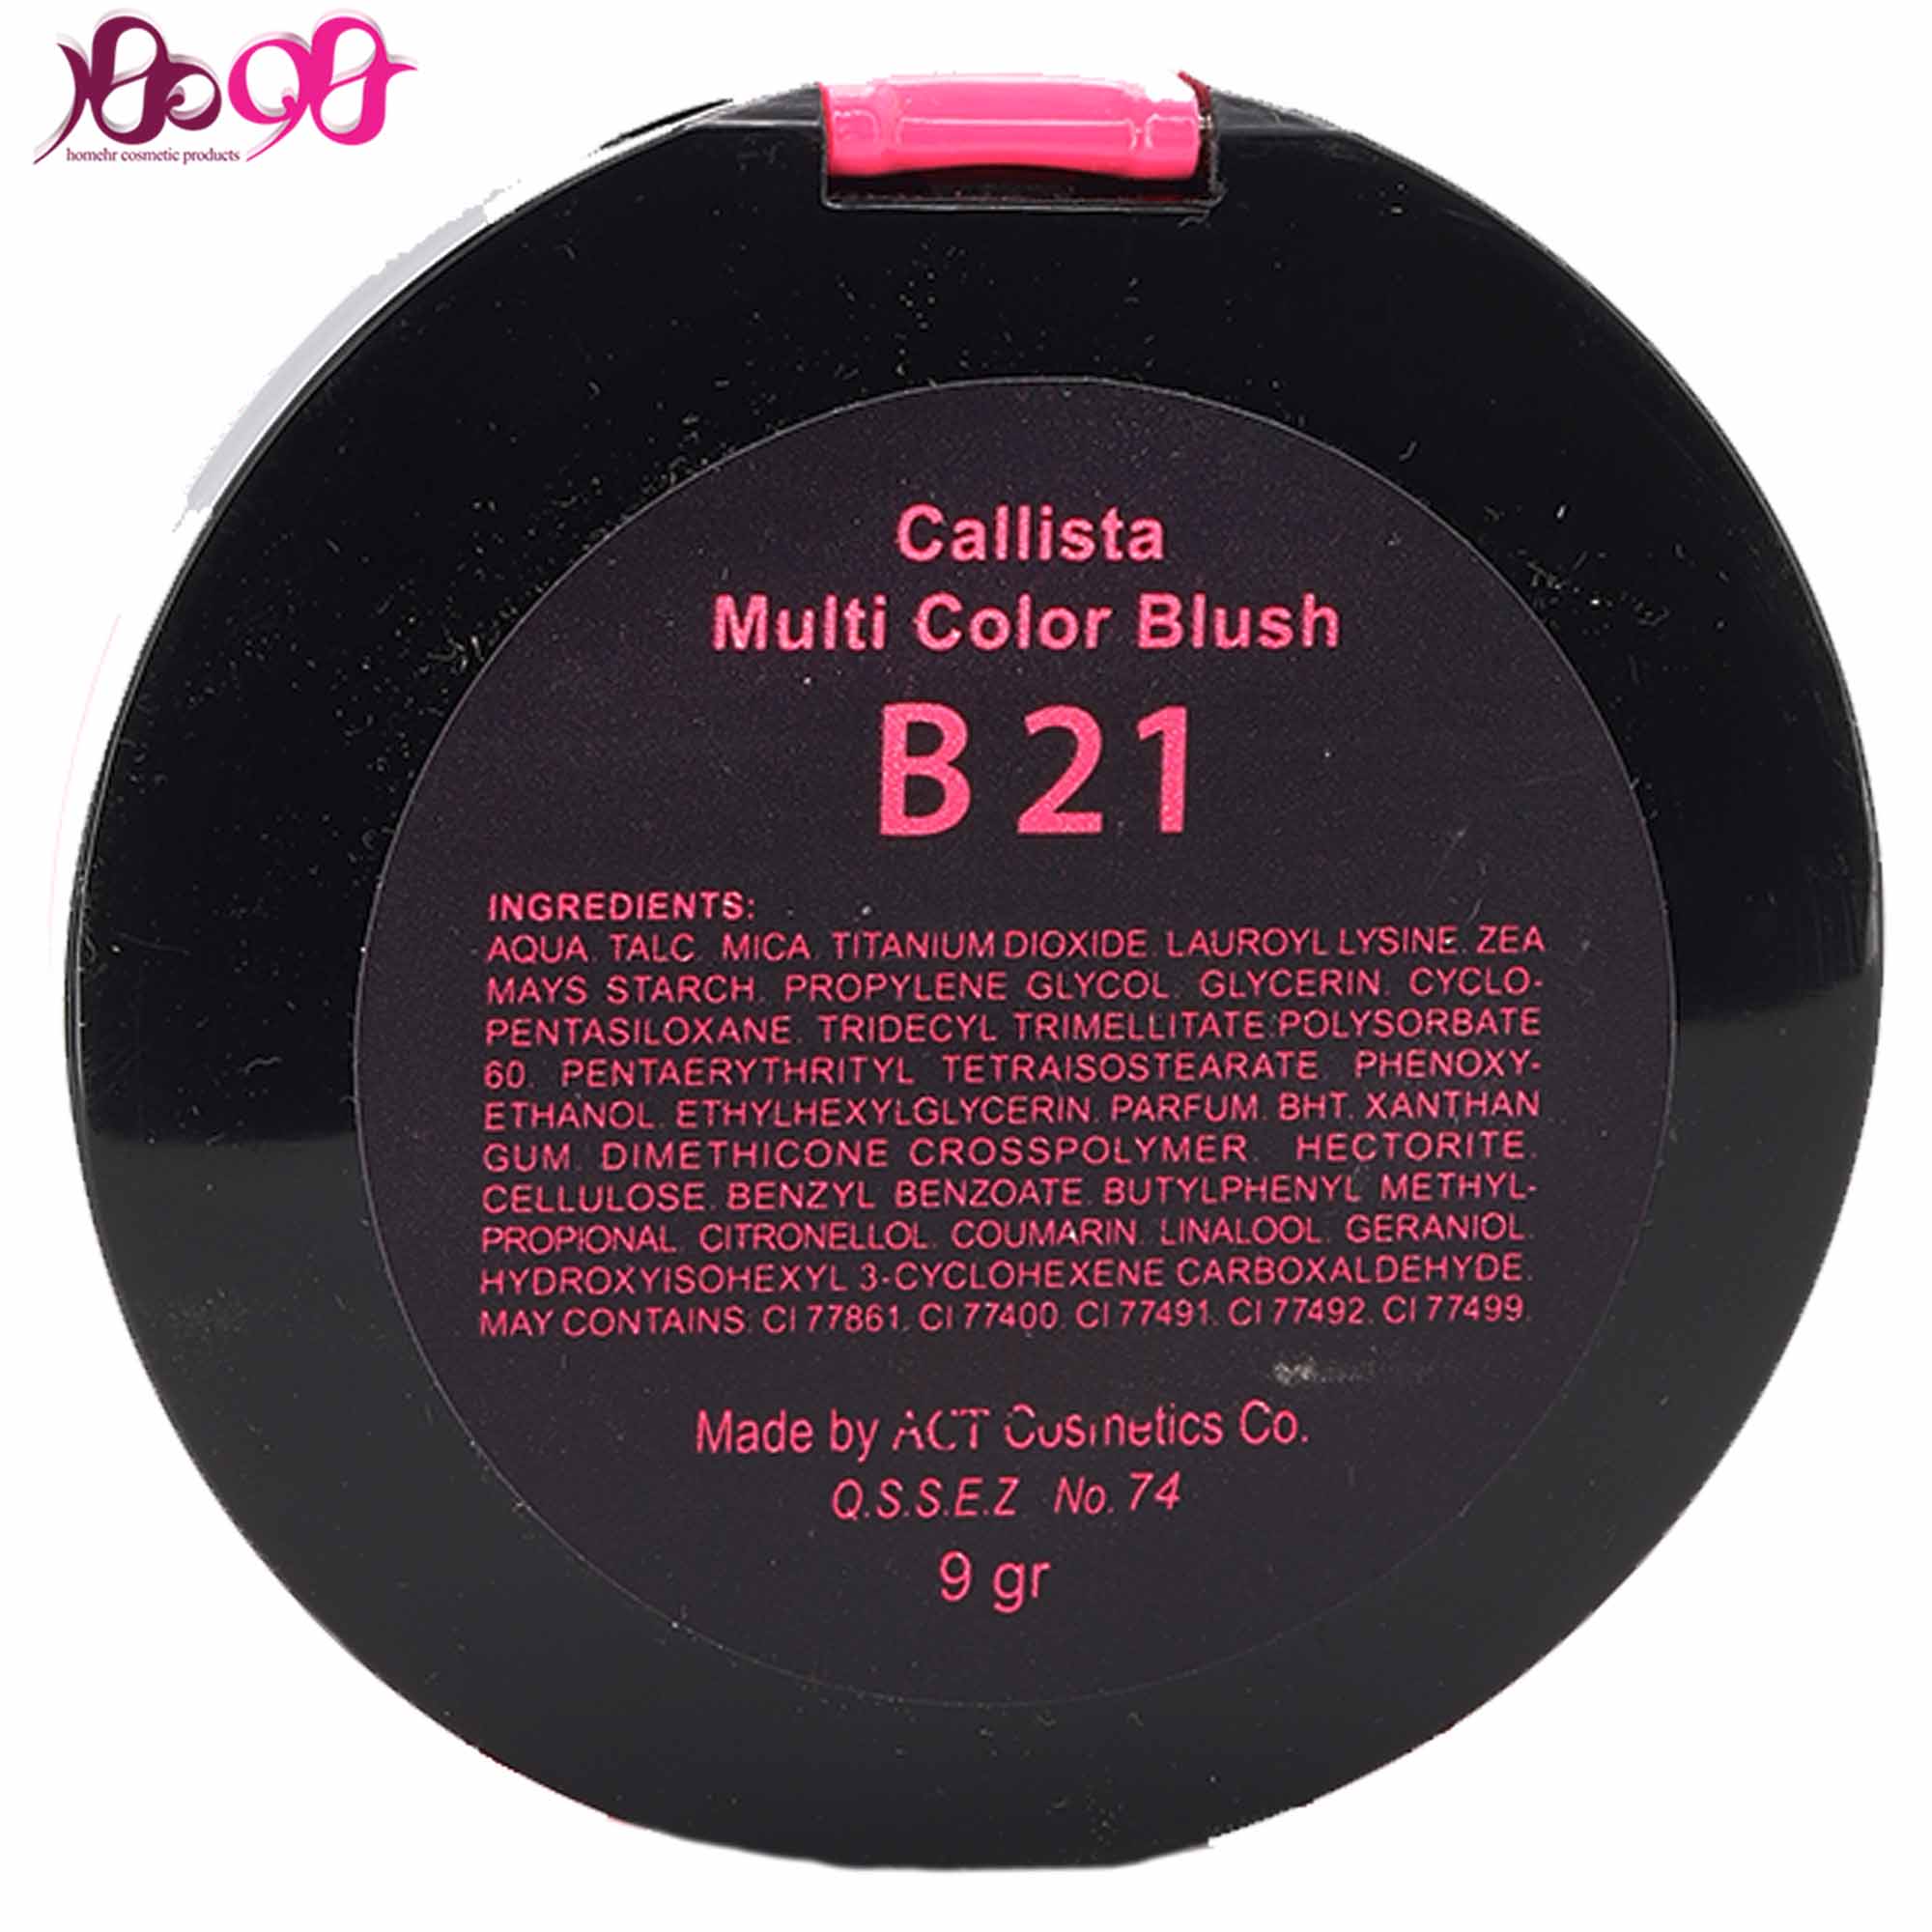 رژگونه-کالیستا-سری-multi-color-blush-شماره-calista-b21